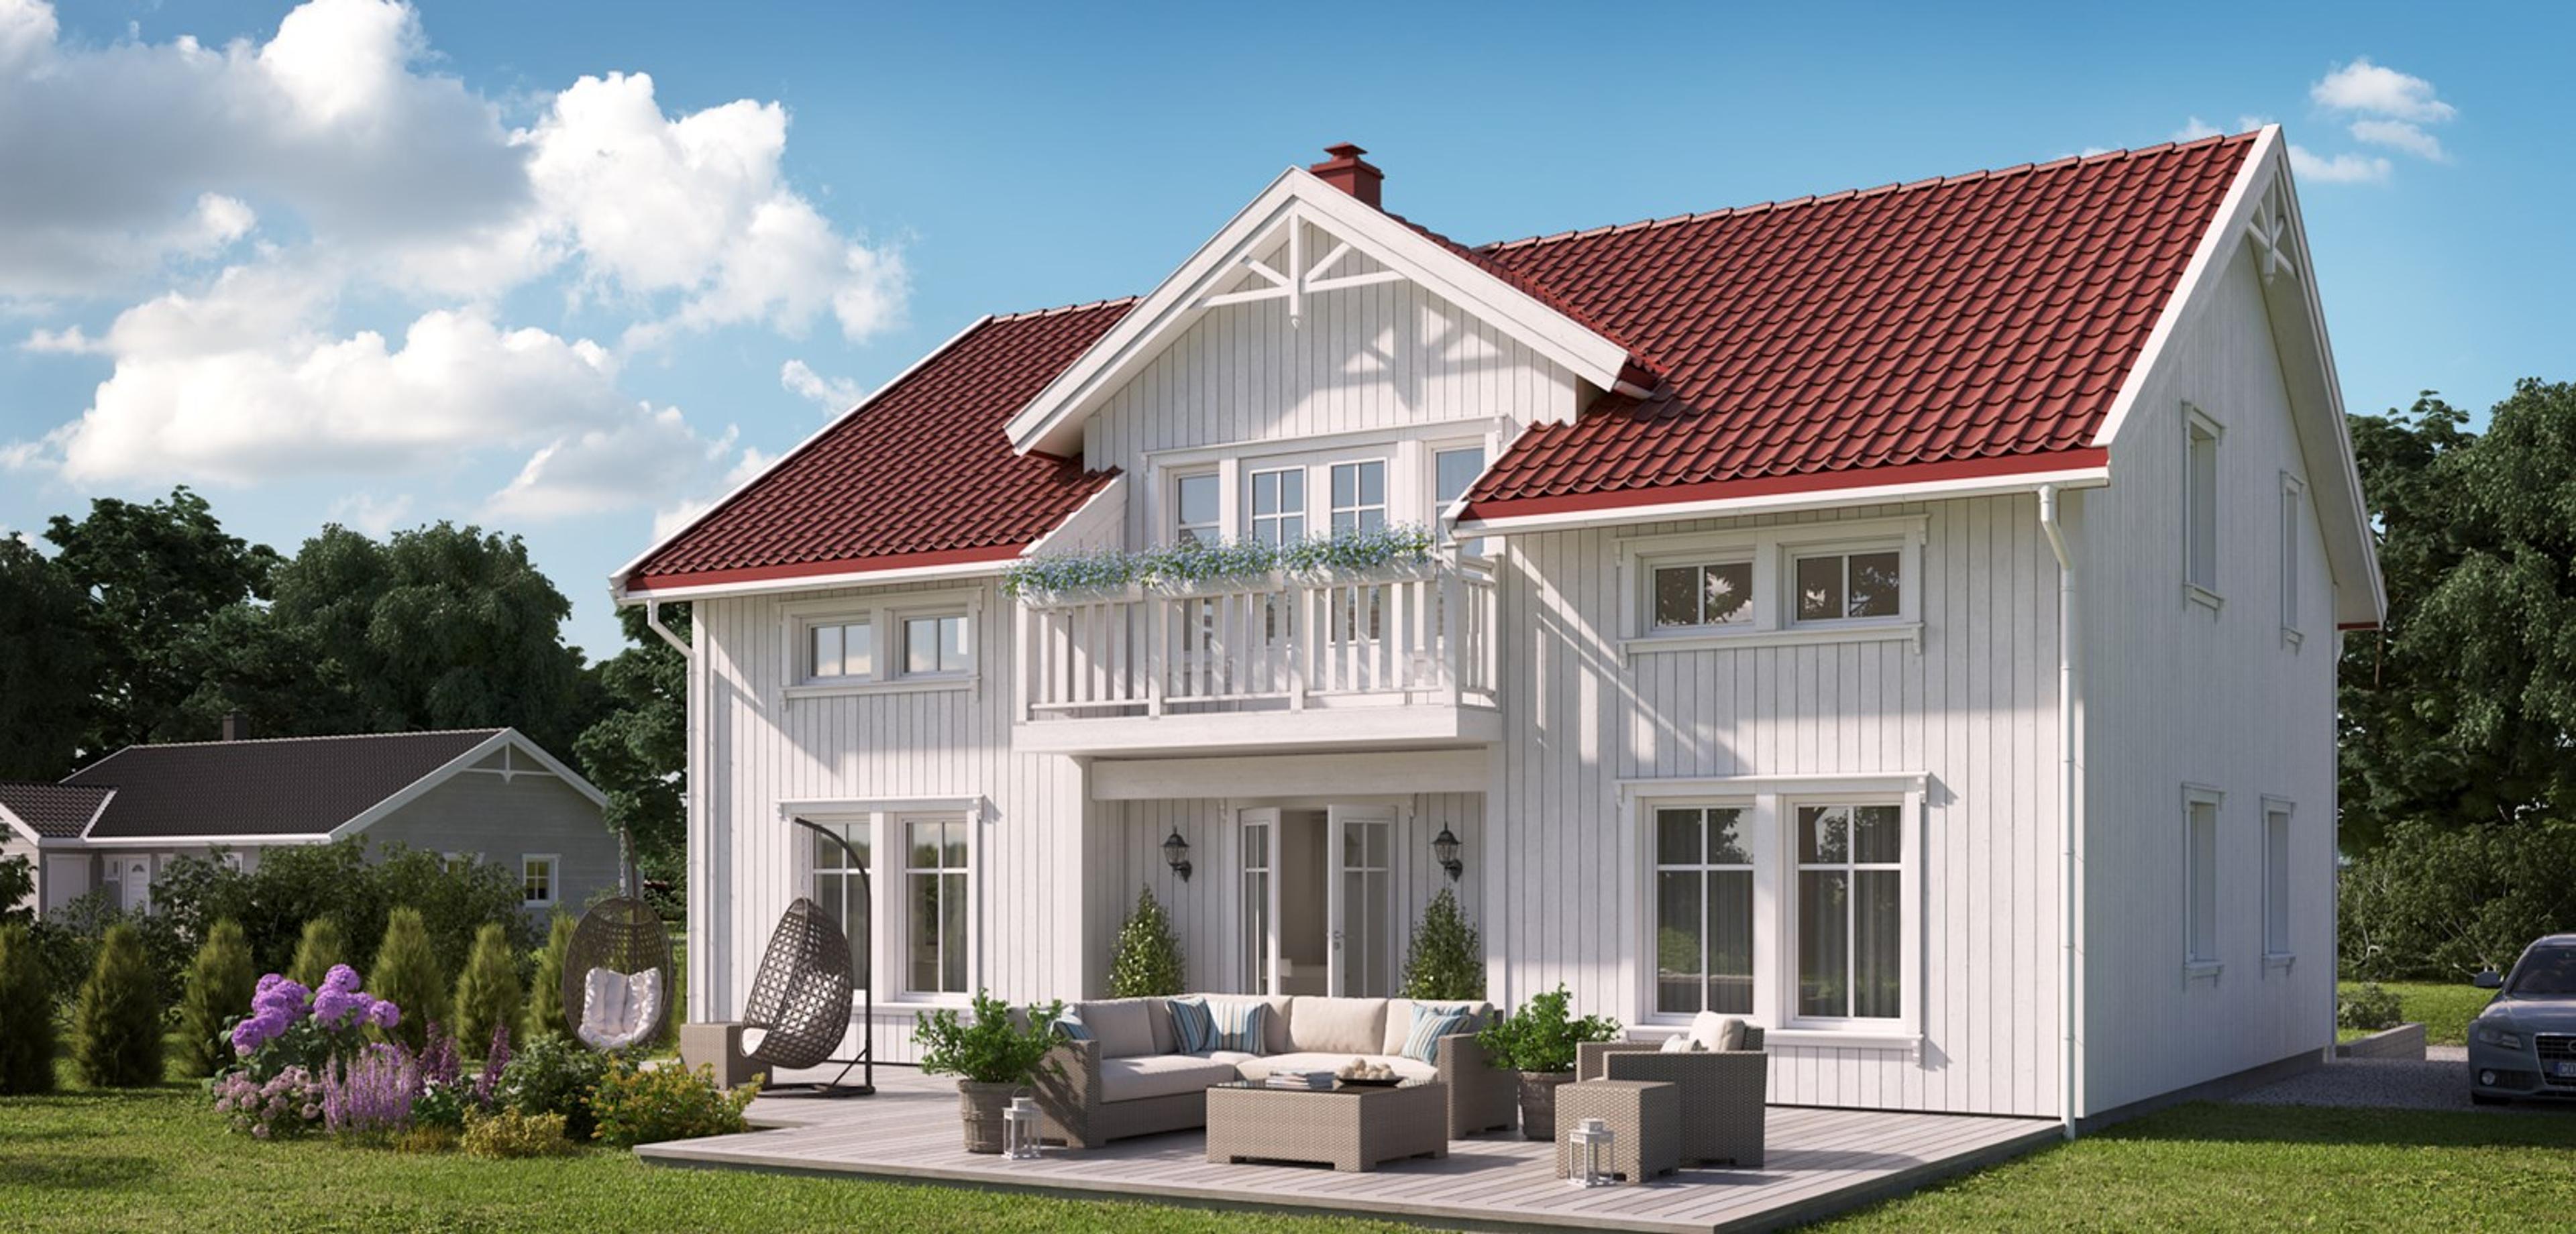 Nanne - Mesterhus Nanne er et tradisjonelt hus i sveitserstil, med et tidløst design og en flott, symmetrisk fasade.